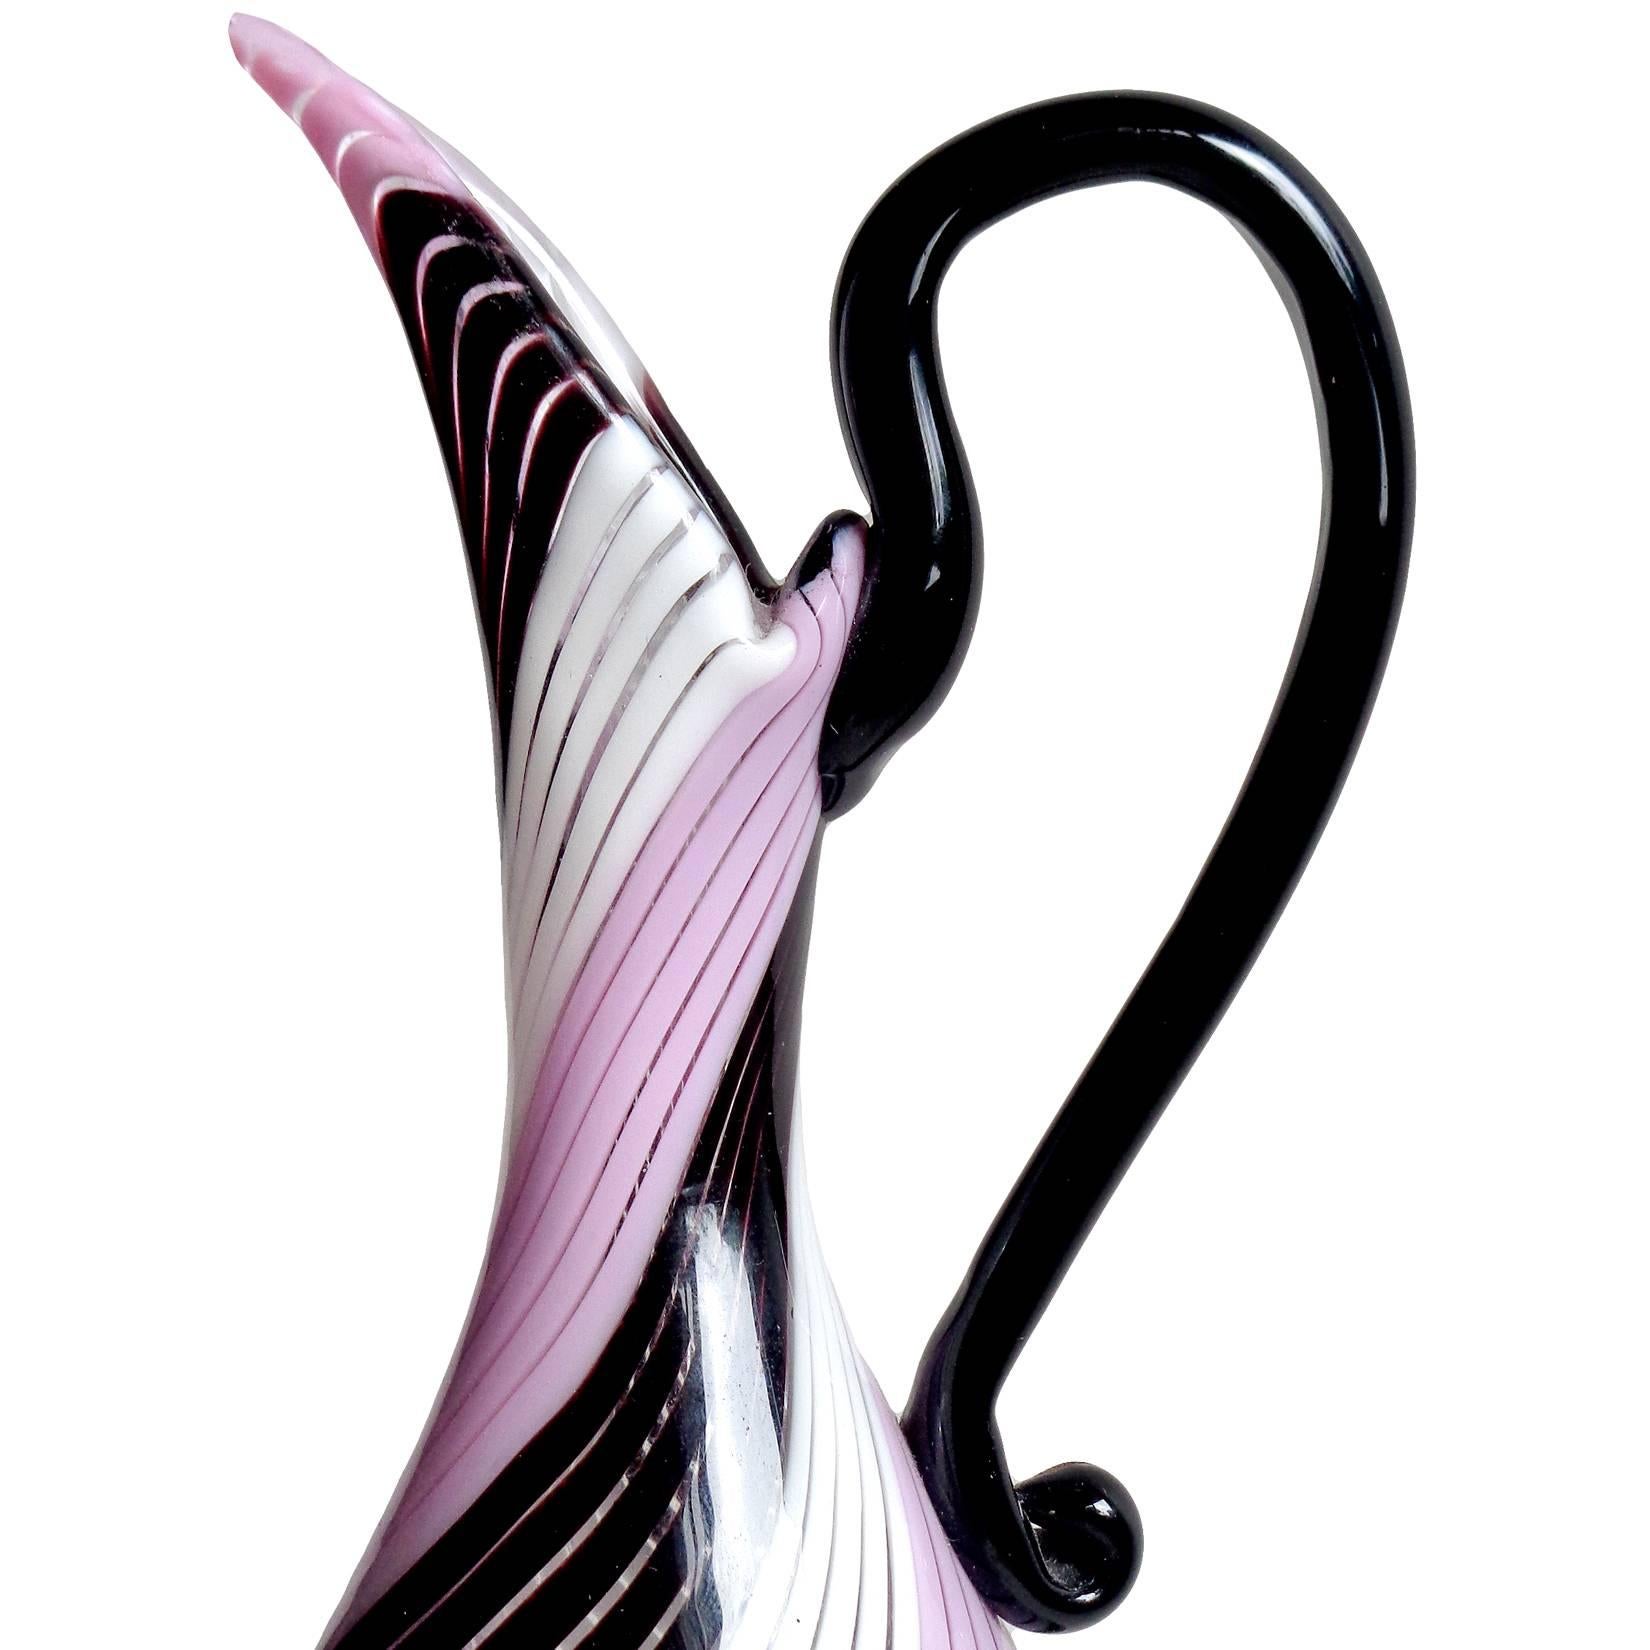 Schöne Vintage Murano mundgeblasen schwarz, weiß und rosa italienischen Kunst Glas Krug / Vase. Dokumentiert für den Designer Dino Martens für Aureliano Toso. Auffällige Farbkombinationen, die ein einzigartiges Muster ergeben. Der elegante